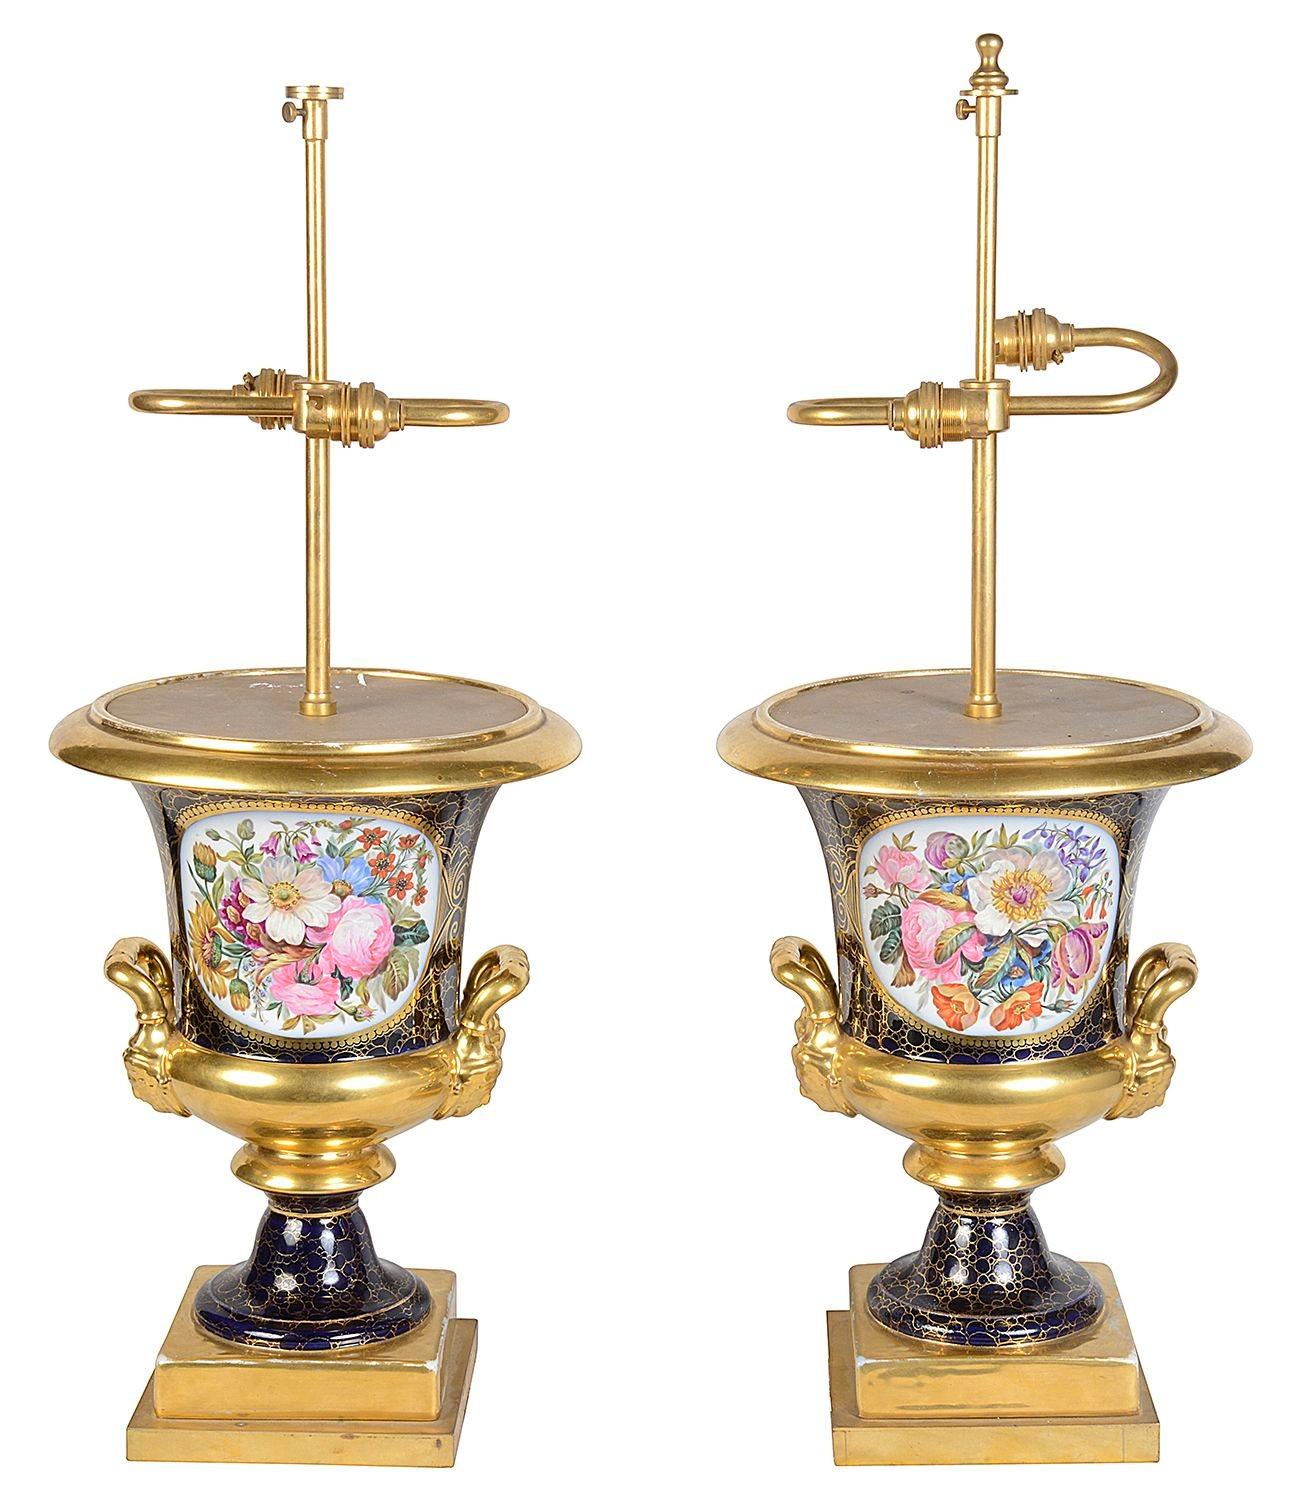 Une paire impressionnante et décorative de lampes en porcelaine de style Sèvres, chacune avec de merveilleuses scènes florales peintes à la main, des crêtes armoriées au dos. Fond bleu cobalt, moulures et poignées dorées.

Lot 78 G204/23 YNKZ